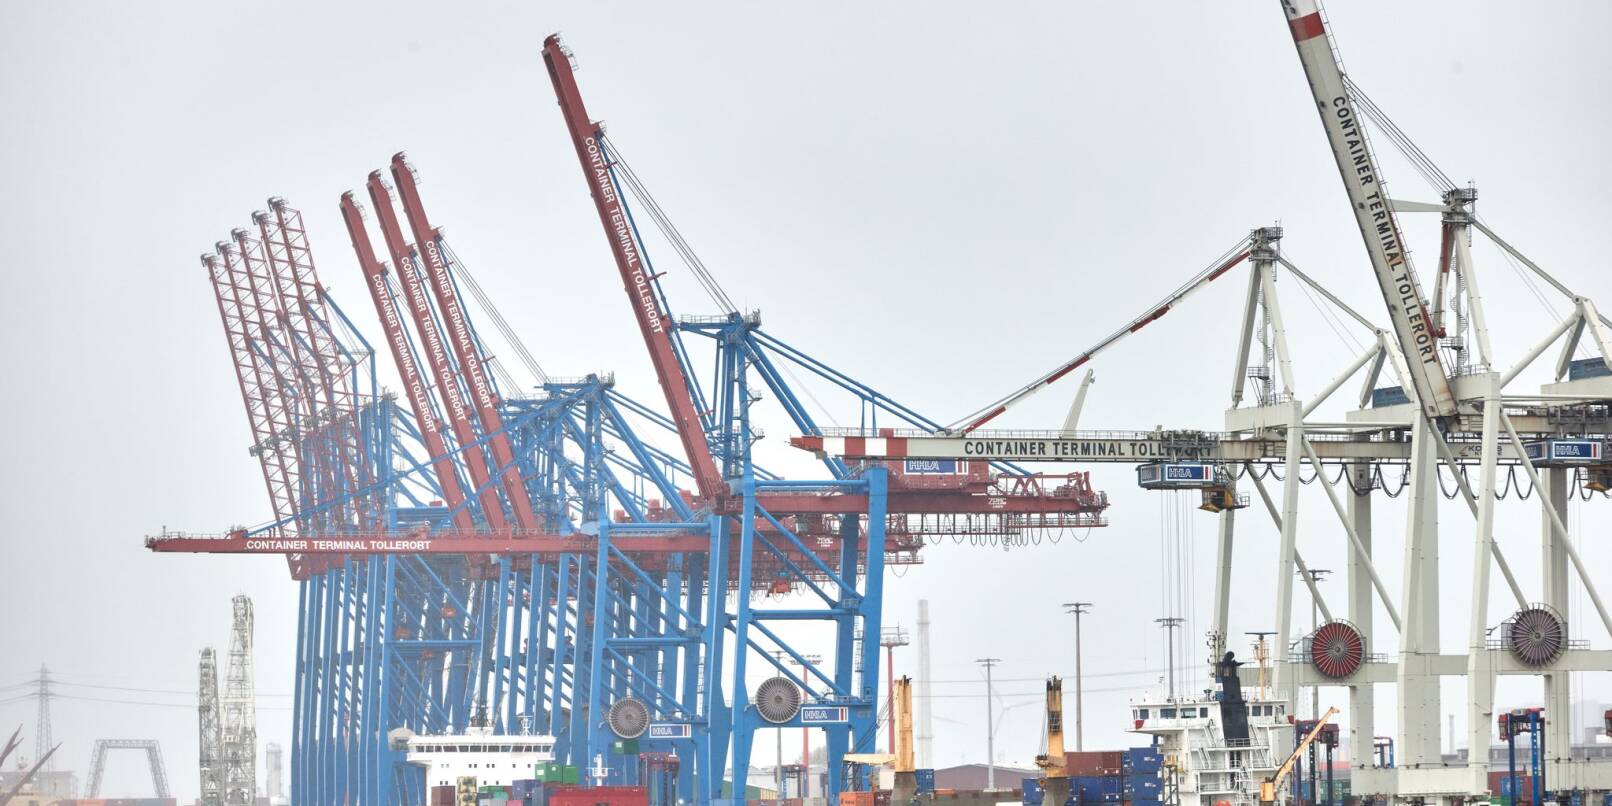 Blaue und weiße Kräne stehen am Hafenterminal Tollerort. Das Hamburger Hafenterminal Tollerort, an dem sich Chinesen beteiligen wollen, ist inzwischen als kritische Infrastruktur registriert.